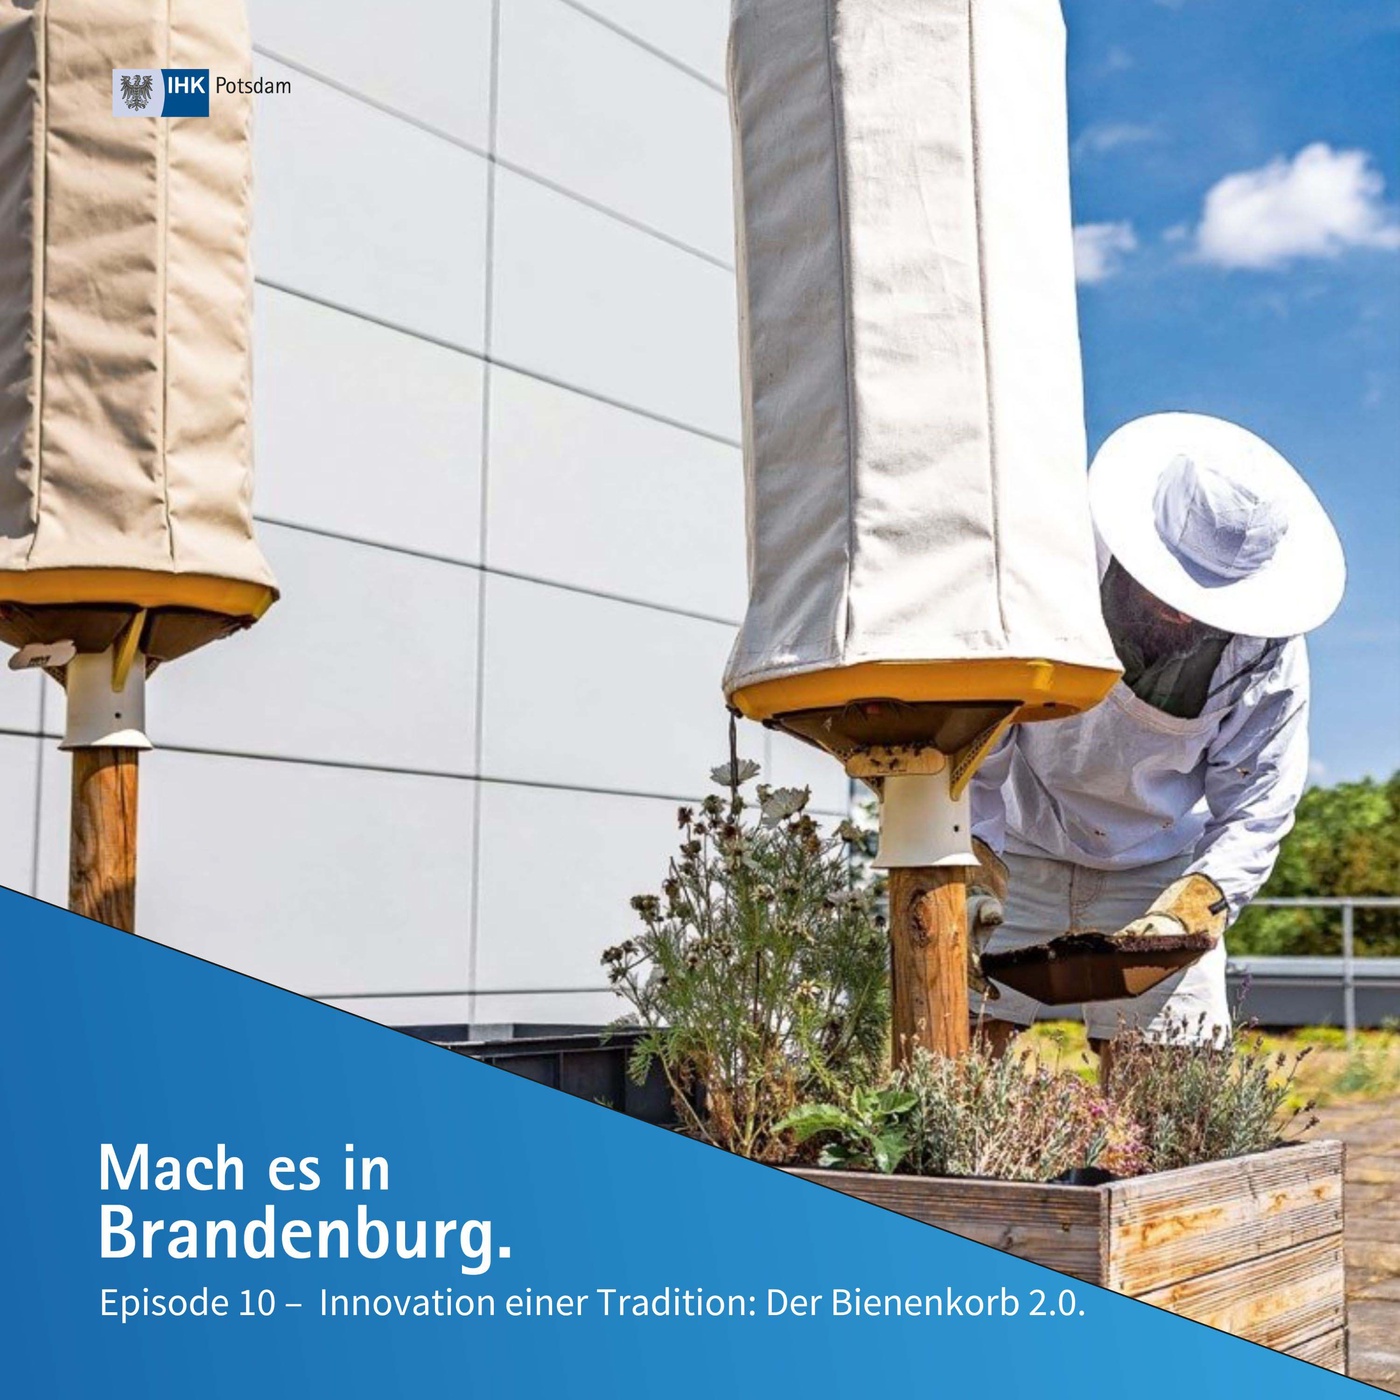 Innovation einer Tradition, der Bienenkorb 2.0 | Mach es in Brandenburg (10)